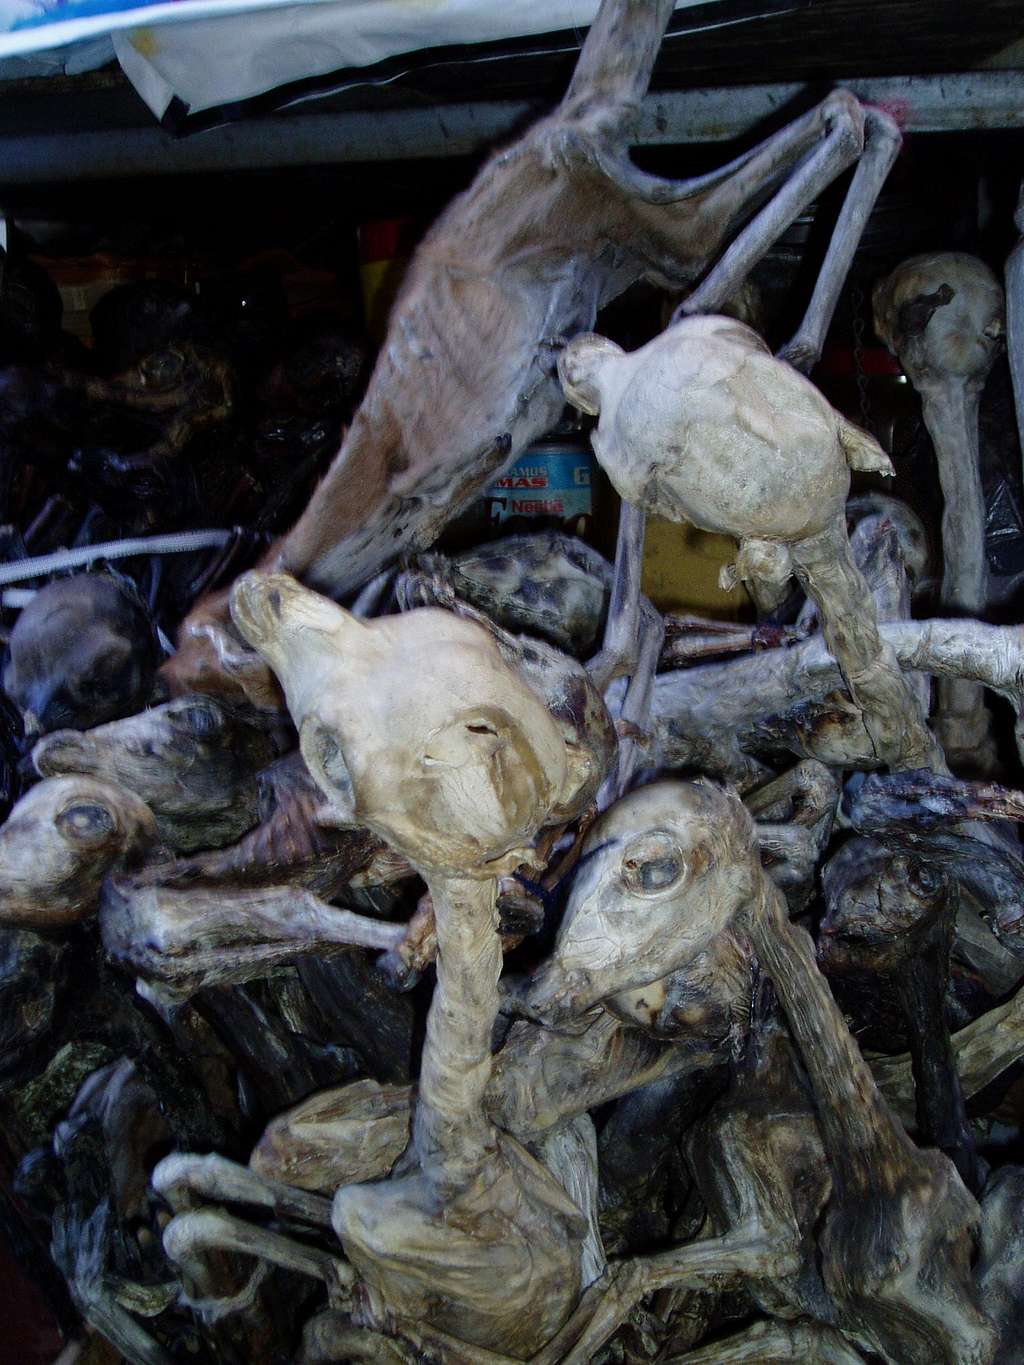 dried lama fetus - witch market - La Paz